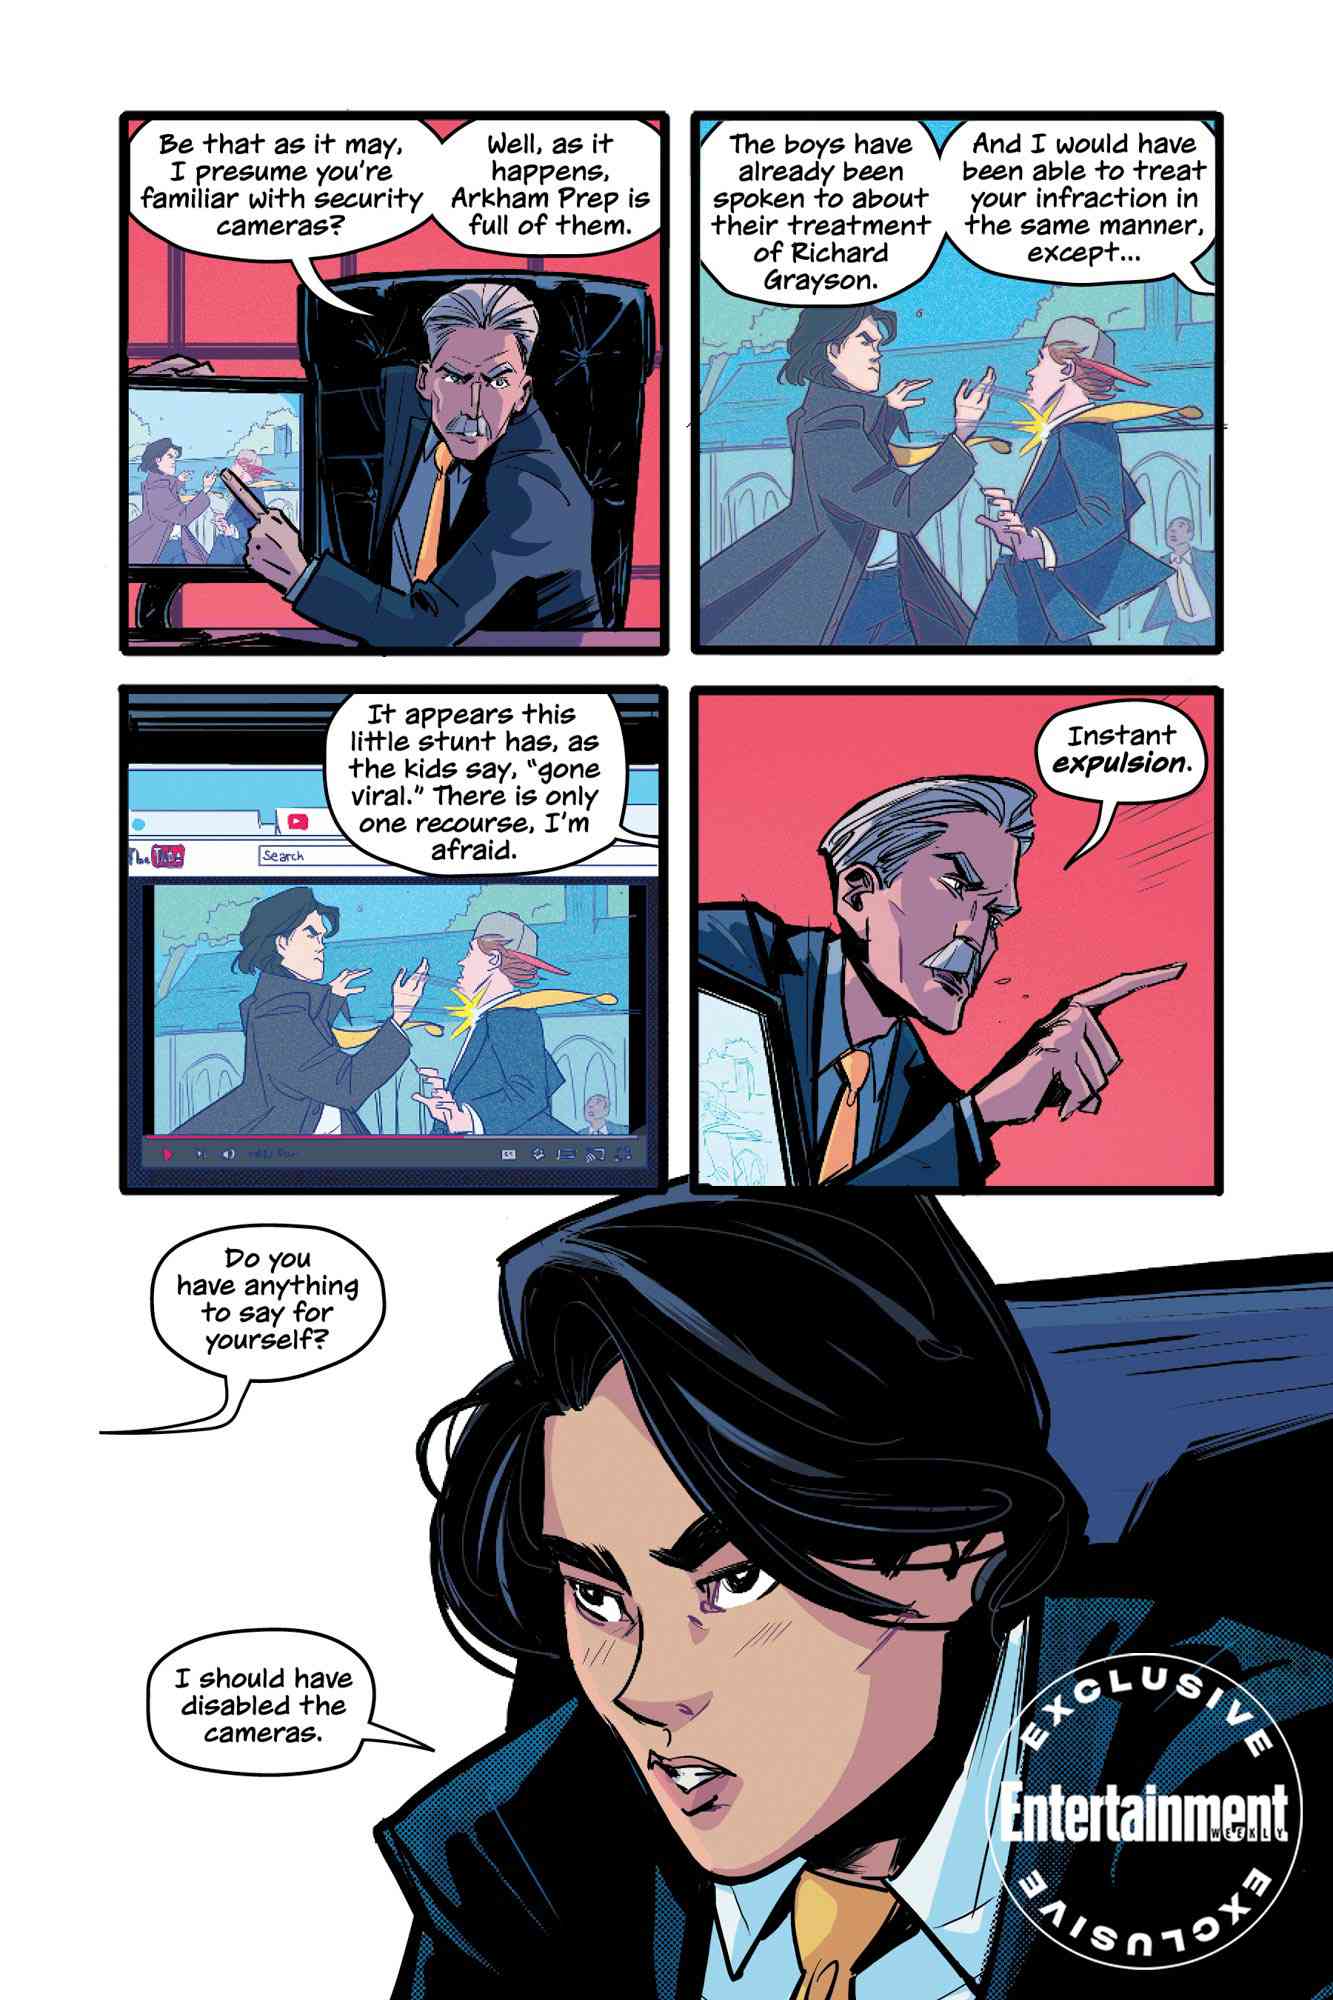 Gotham High first look: Batman meets Gossip Girl in graphic novel 